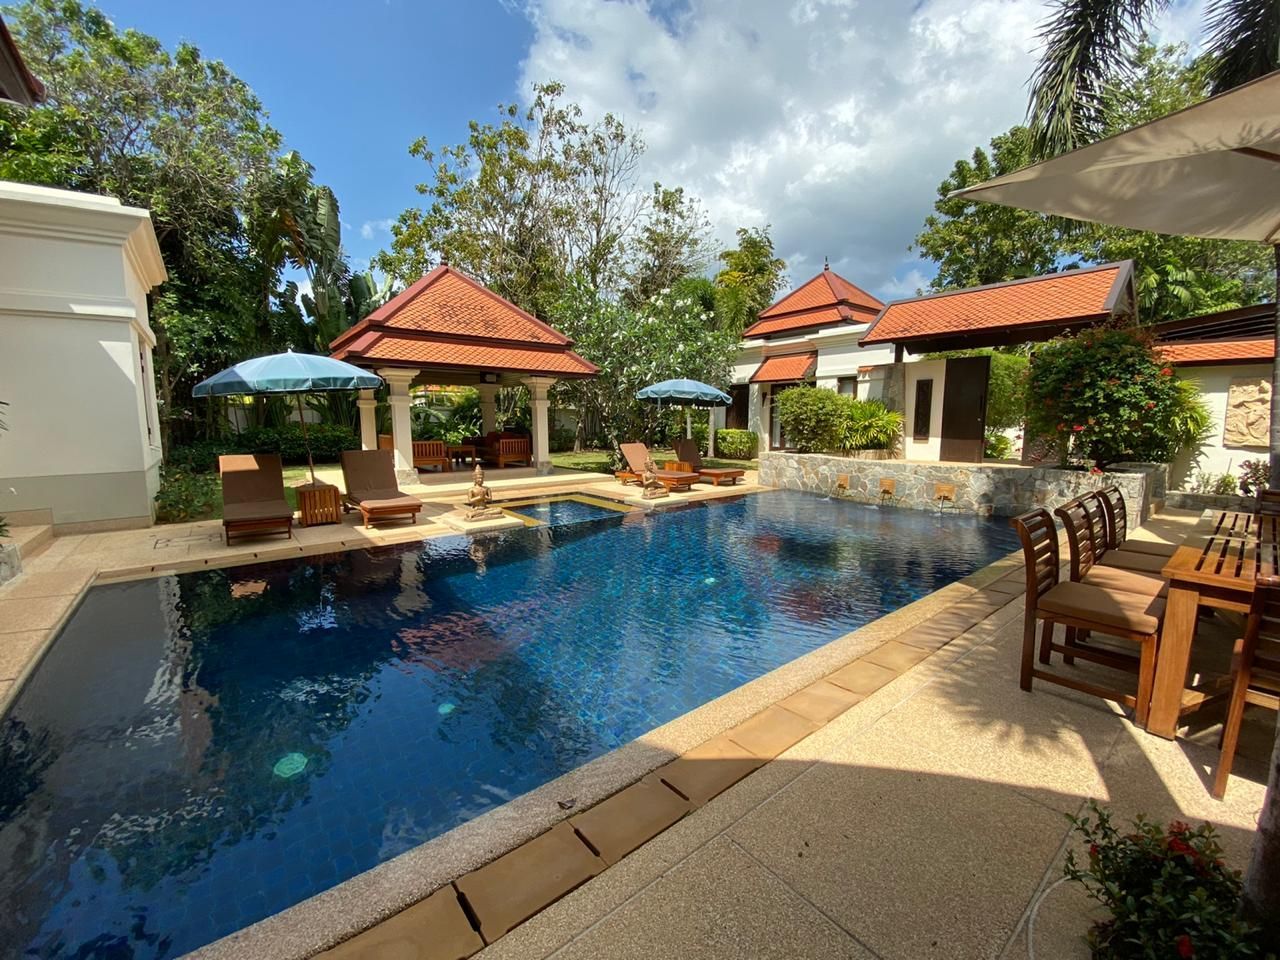 Villa in Insel Phuket, Thailand, 320 m2 - Foto 1